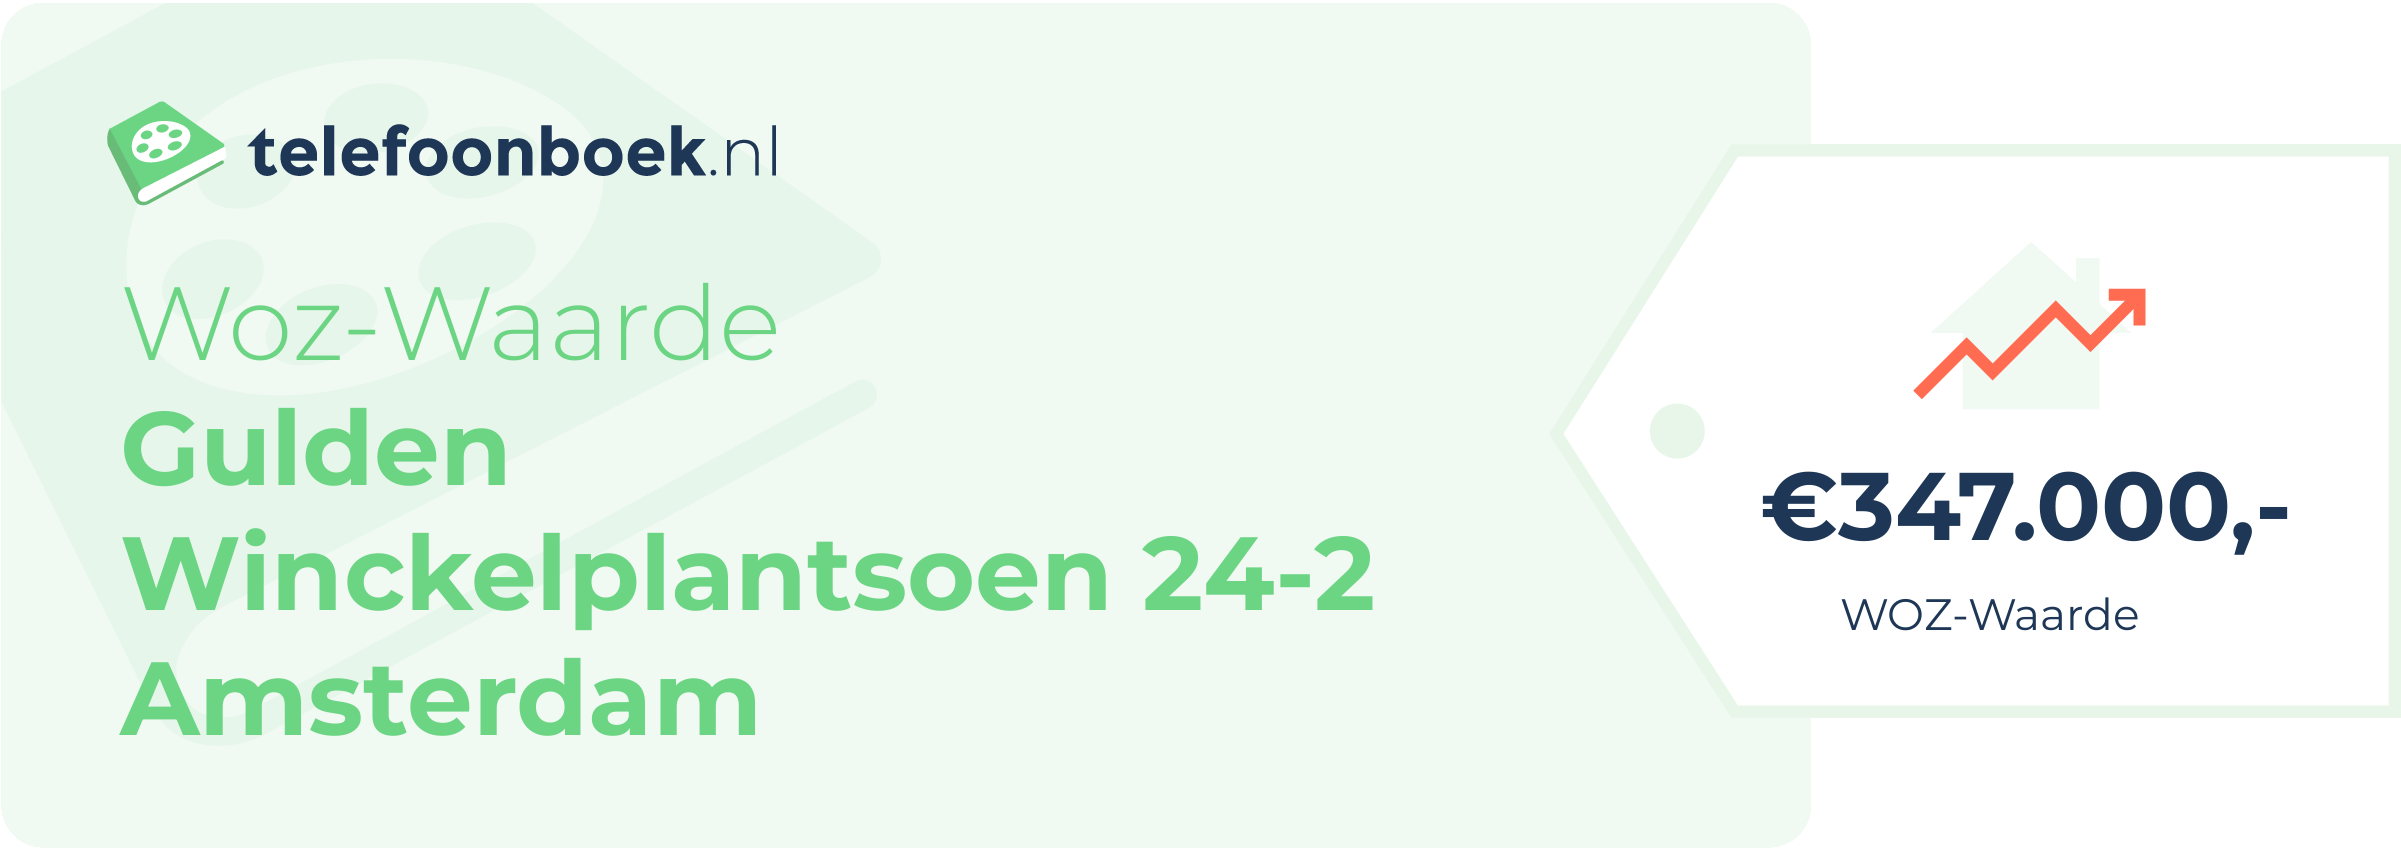 WOZ-waarde Gulden Winckelplantsoen 24-2 Amsterdam